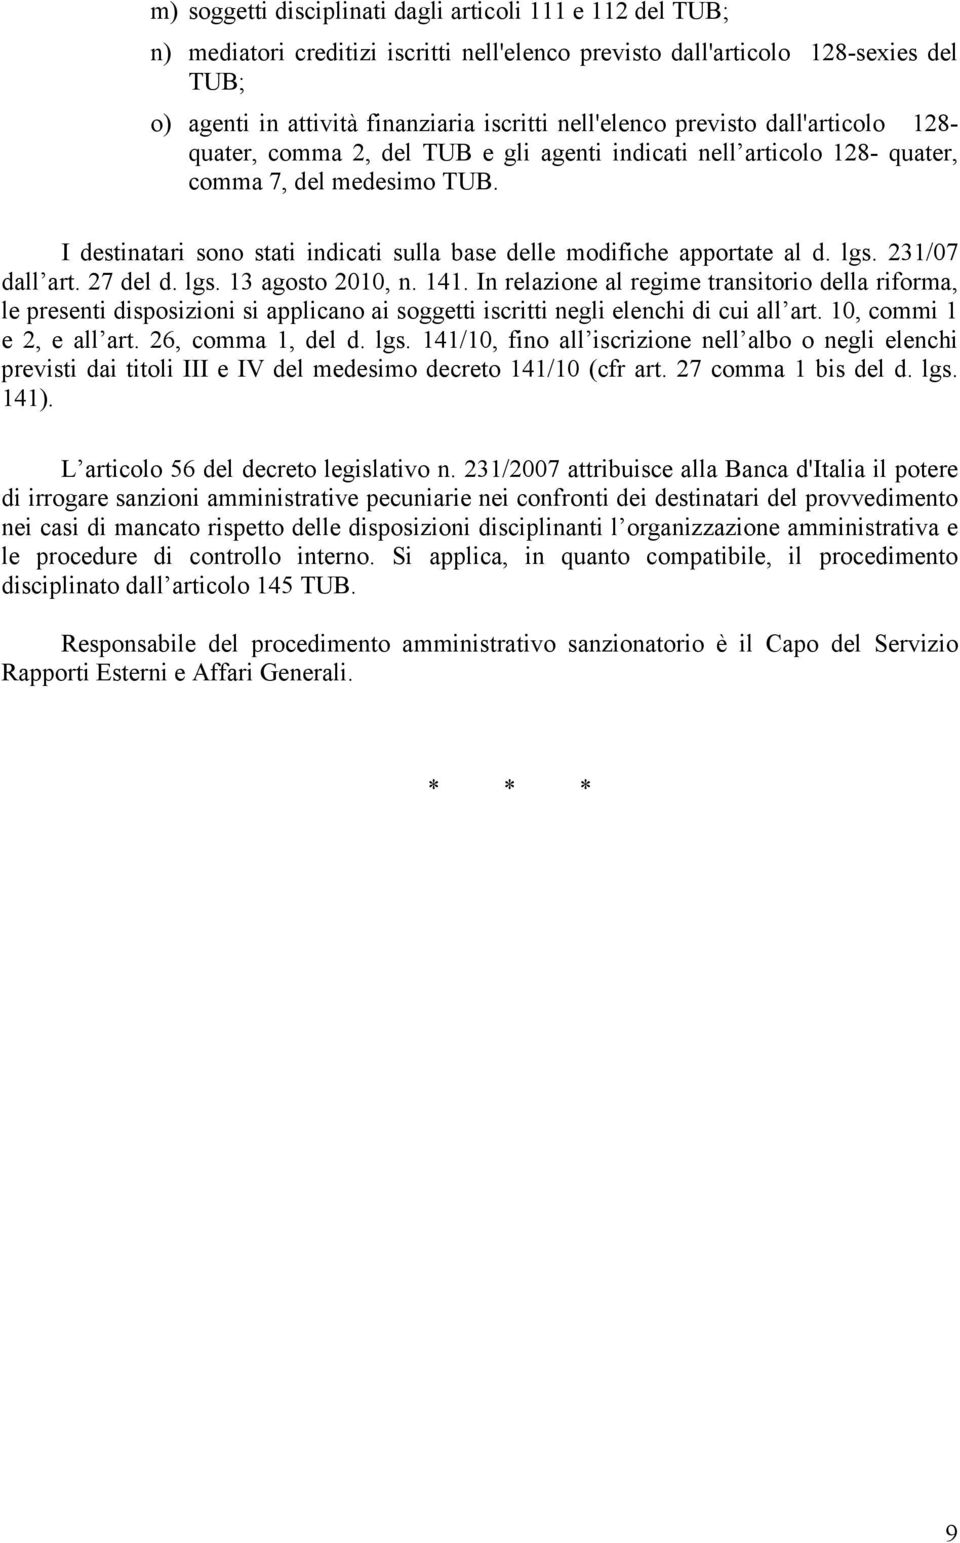 I destinatari sono stati indicati sulla base delle modifiche apportate al d. lgs. 231/07 dall art. 27 del d. lgs. 13 agosto 2010, n. 141.